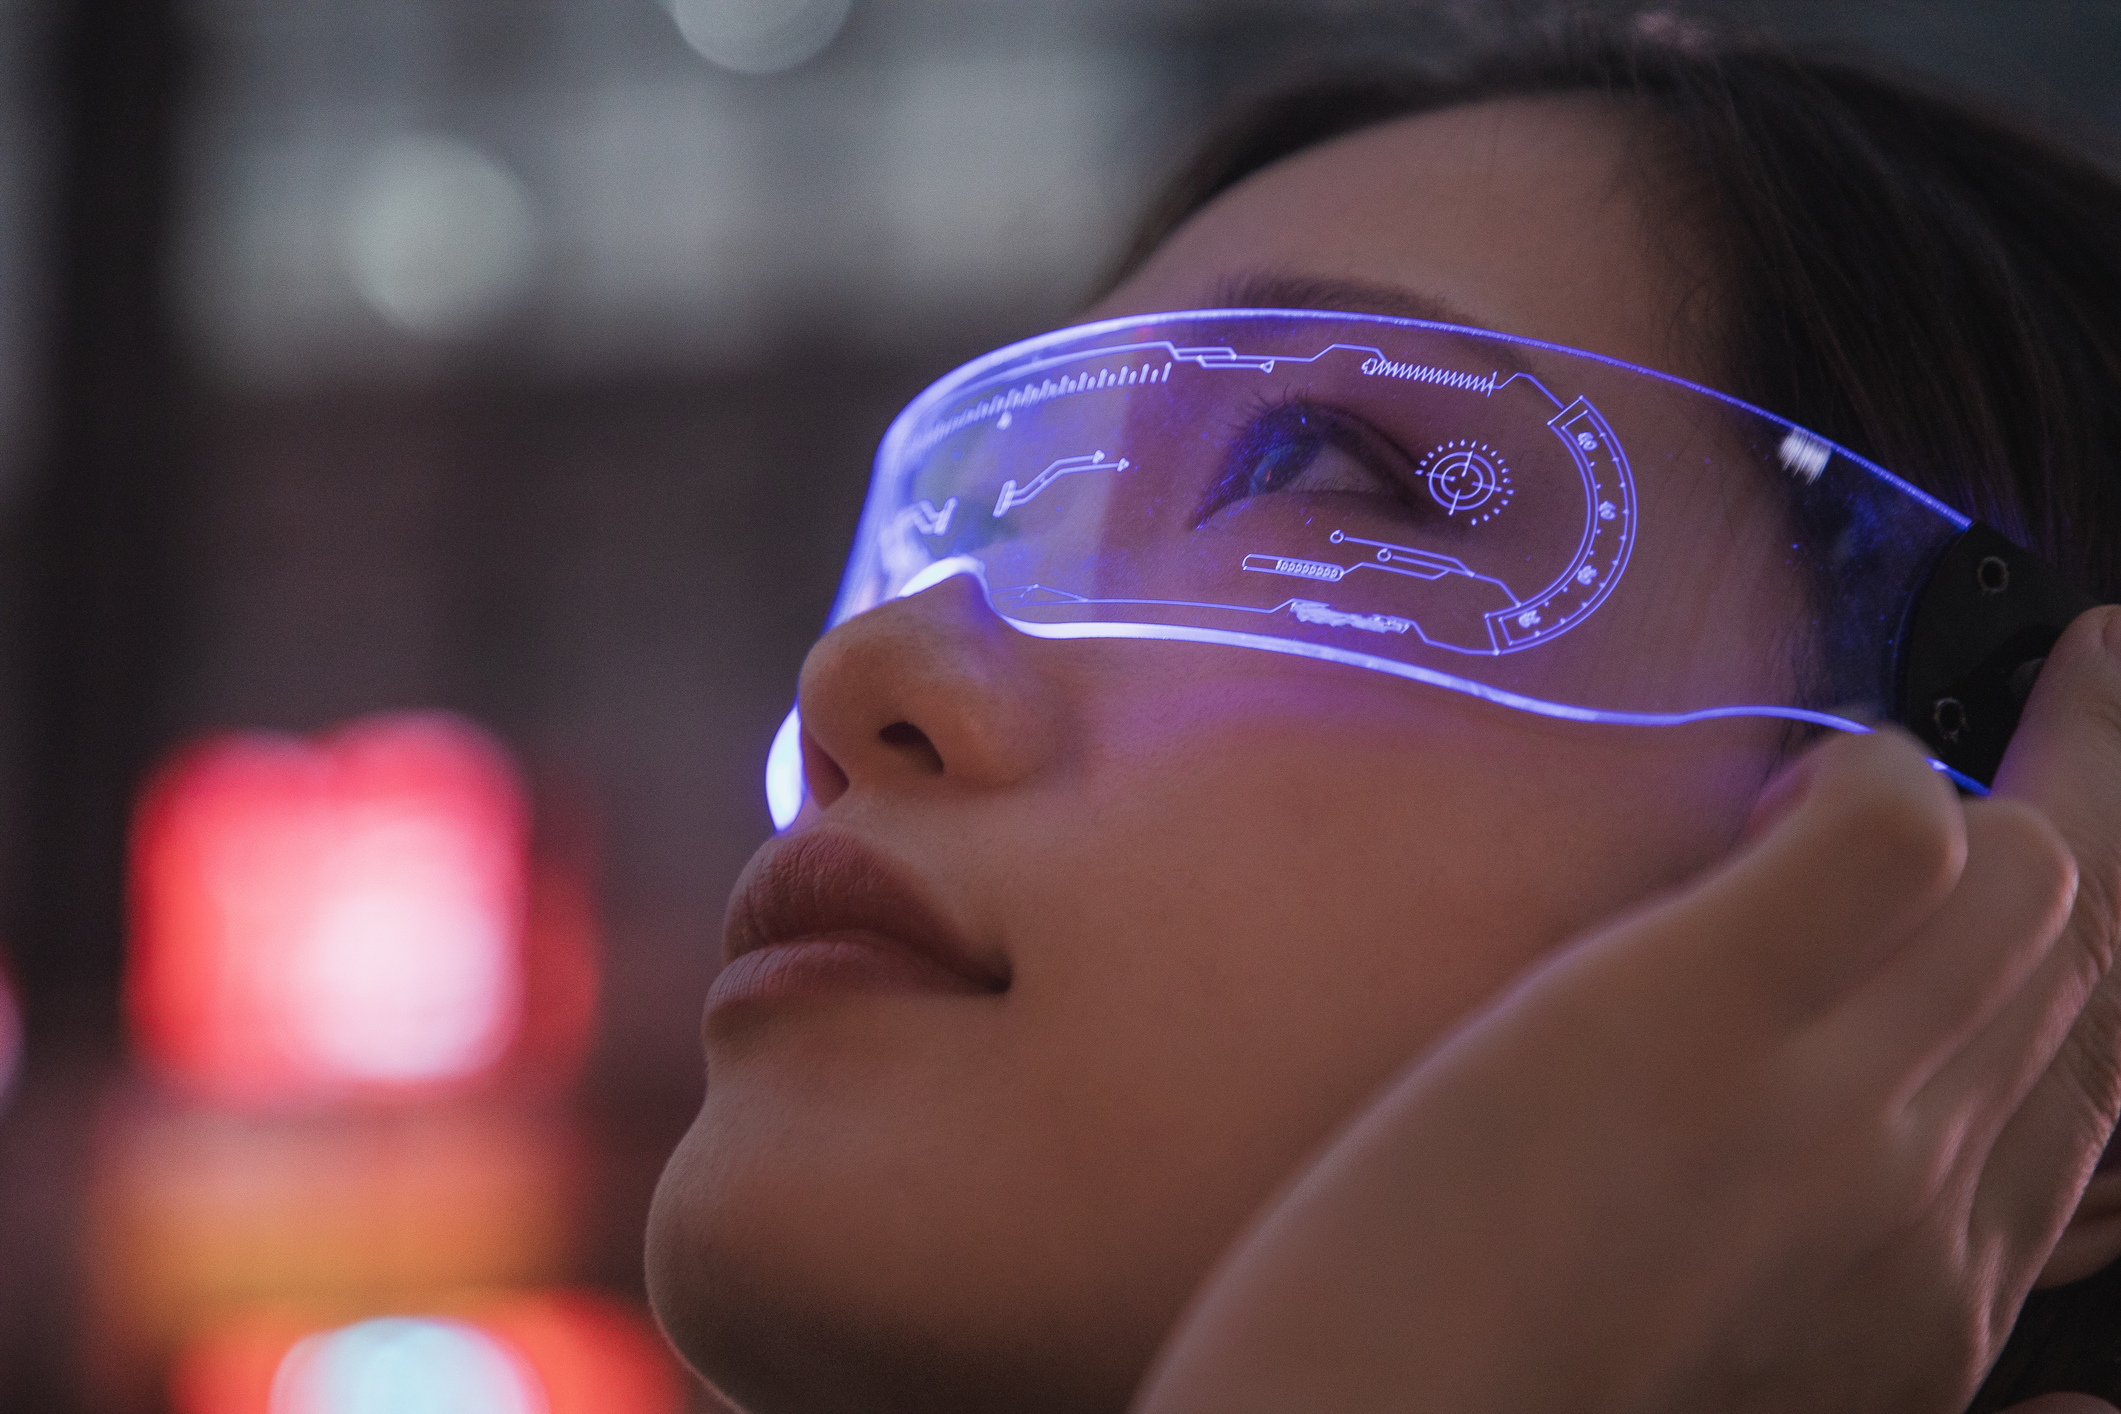 Már jövőre megérkezhet az Apple okosszemüvege, ami tíz éven belül nyugdíjba küldheti az iPhone-t is